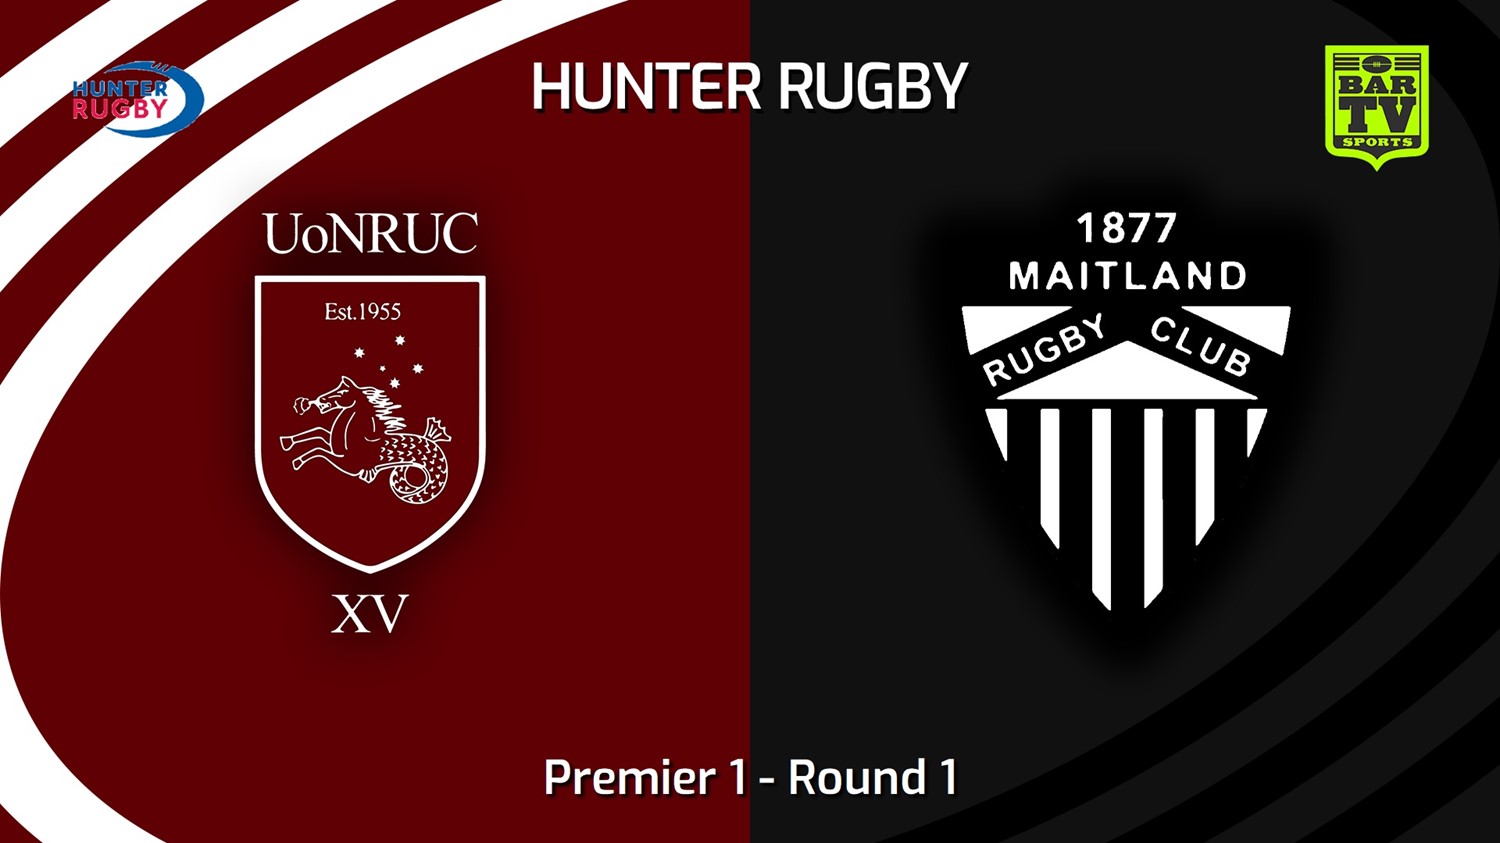 230415-Hunter Rugby Round 1 - Premier 1 - University Of Newcastle v Maitland Minigame Slate Image